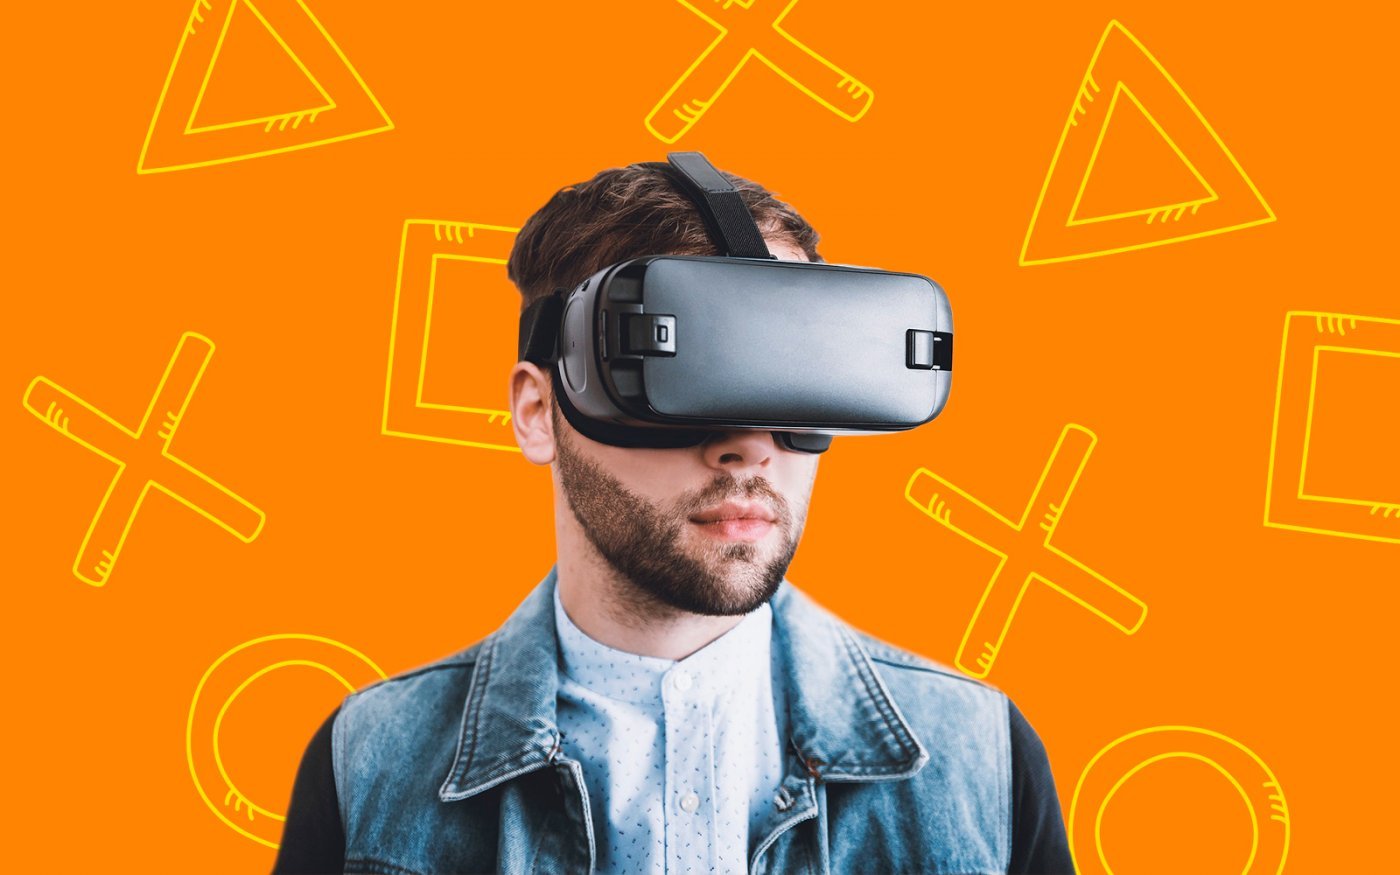 Gafas Realidad Virtual: todo lo que necesitas saber y los mejores